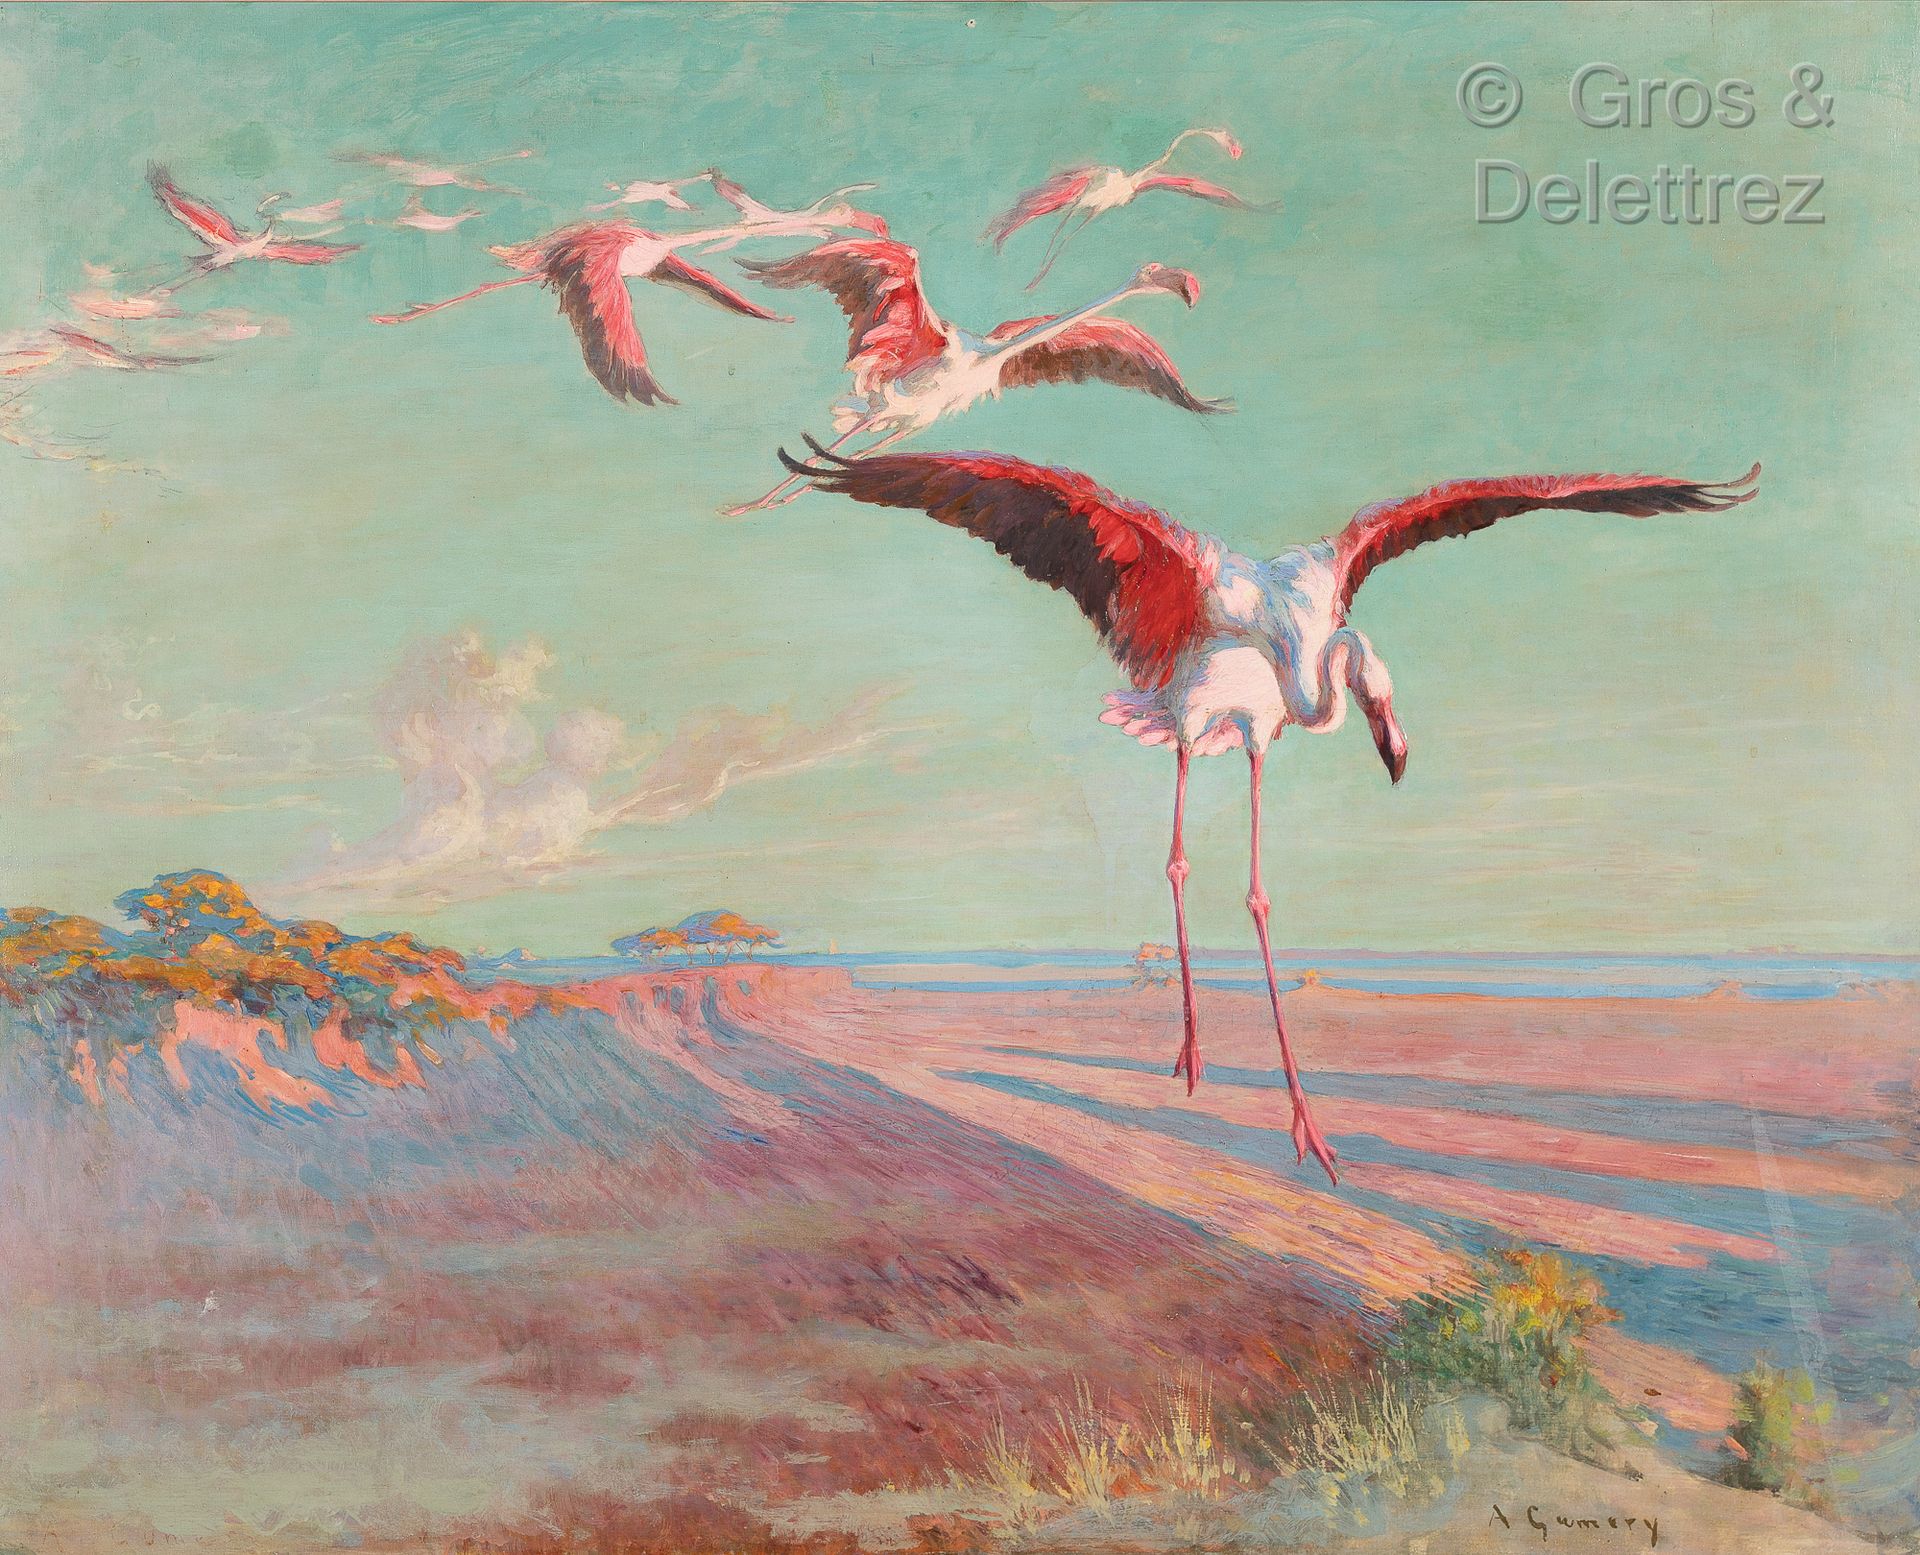 Null 阿道夫-古梅里 (1861-1943)

在湖面上飞行的粉红色火烈鸟，突尼斯

布面油画，右下方有签名。

81 x 101 cm